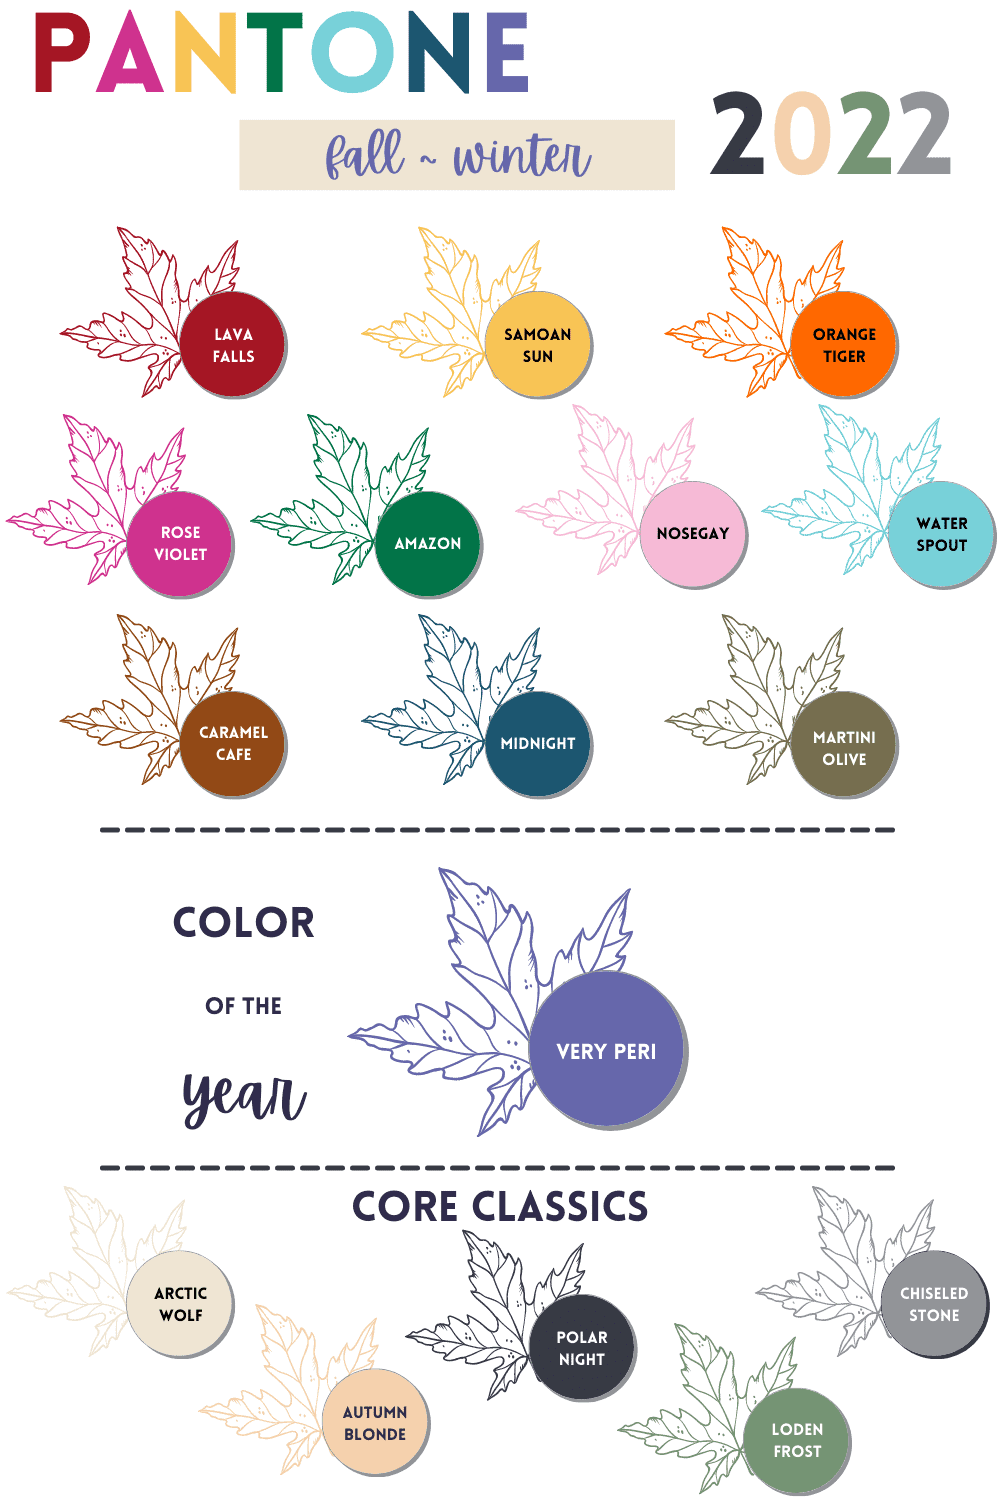 Pantone Colors Pin for Fall/winter 2022